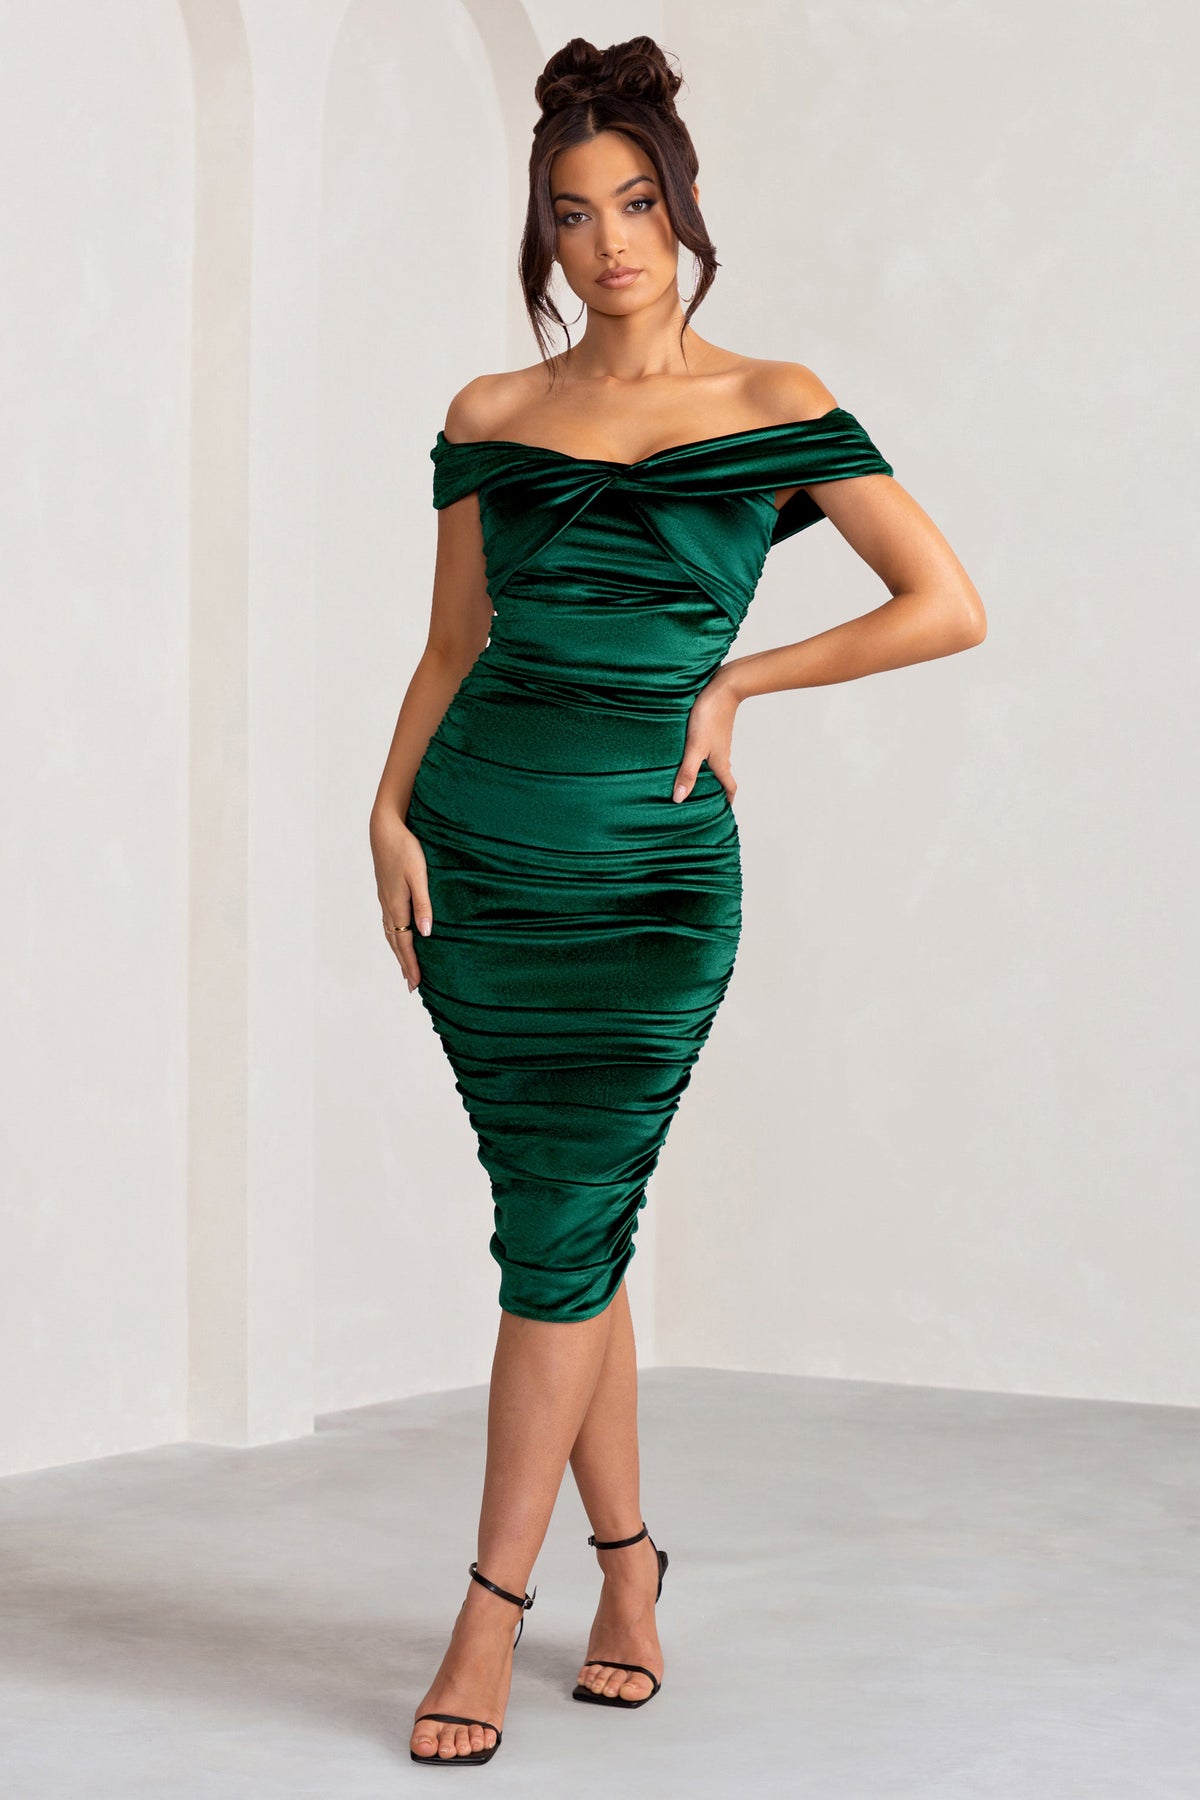 velvet green dress